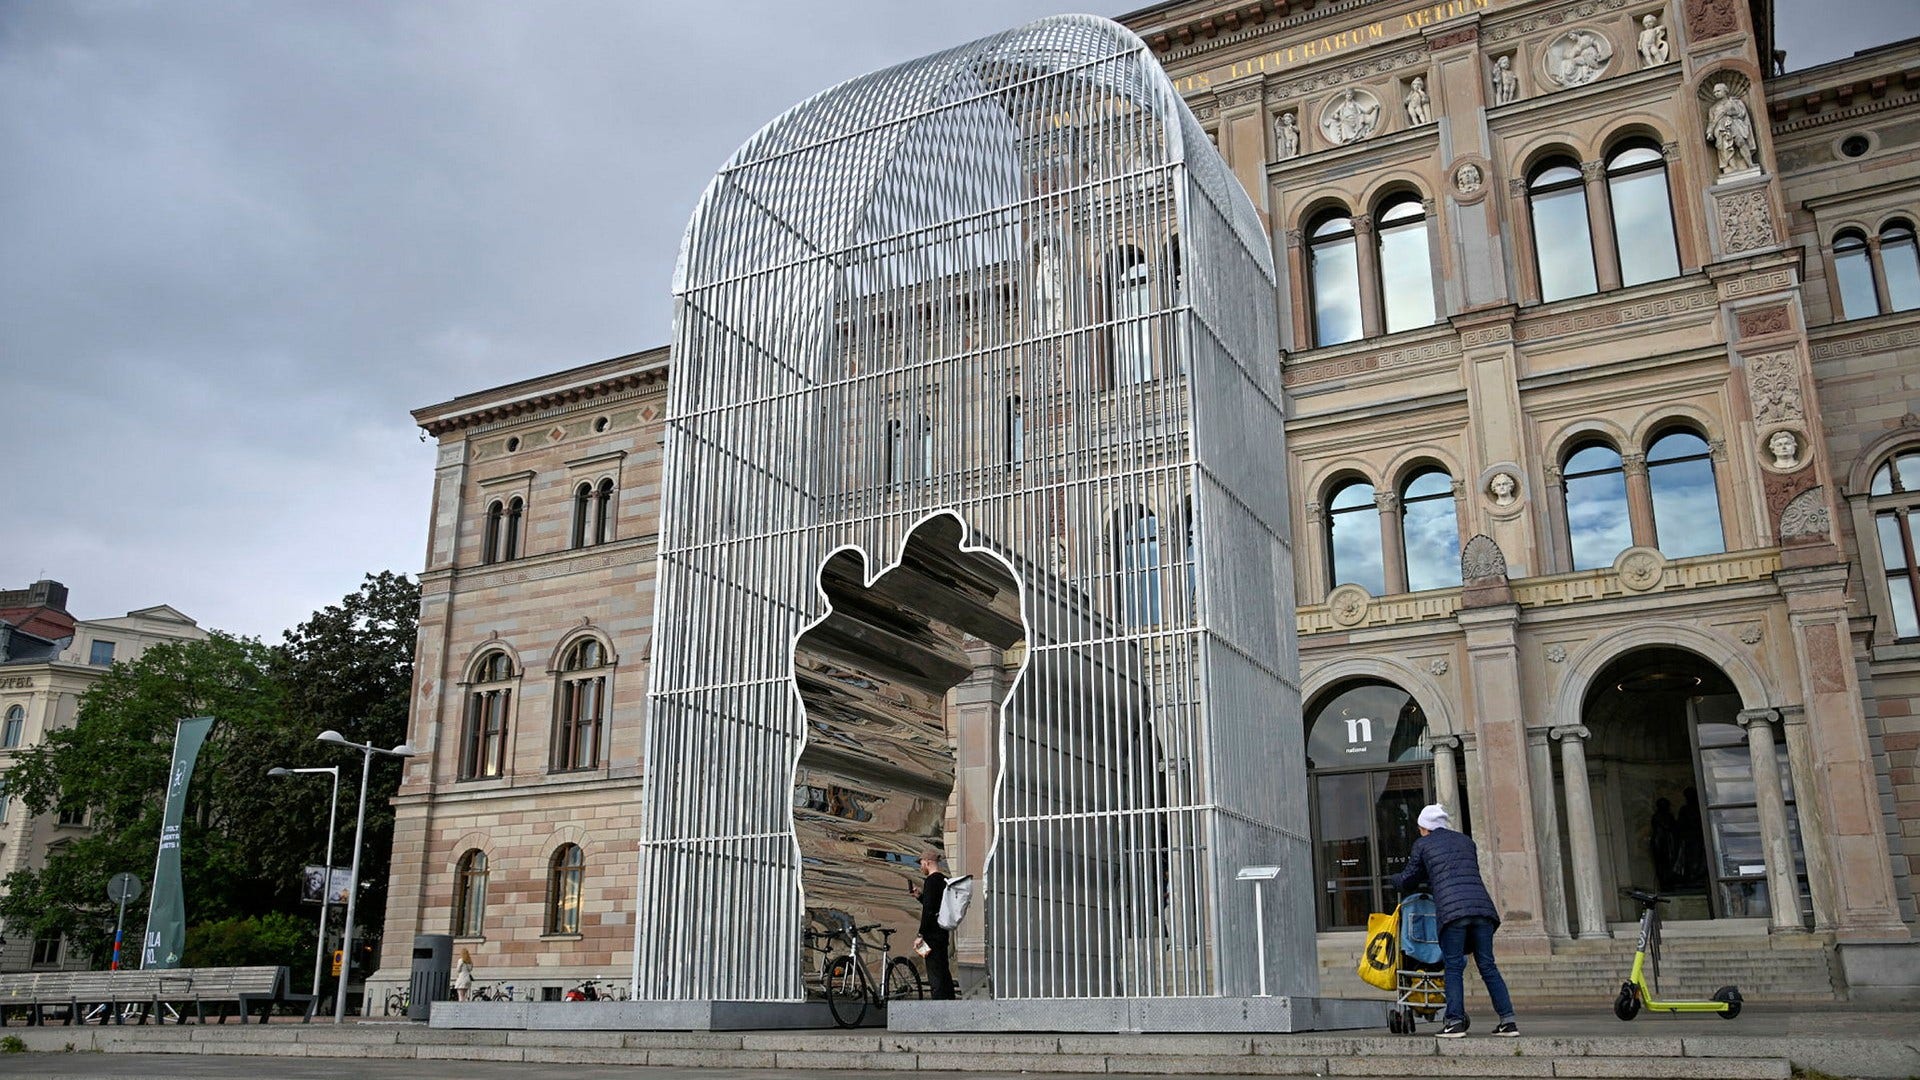 Skulpturen ”Arch” av konstnären Ai Weiwei utanför Nationalmuseum i Stockholm. Skaparens namn borde framgå